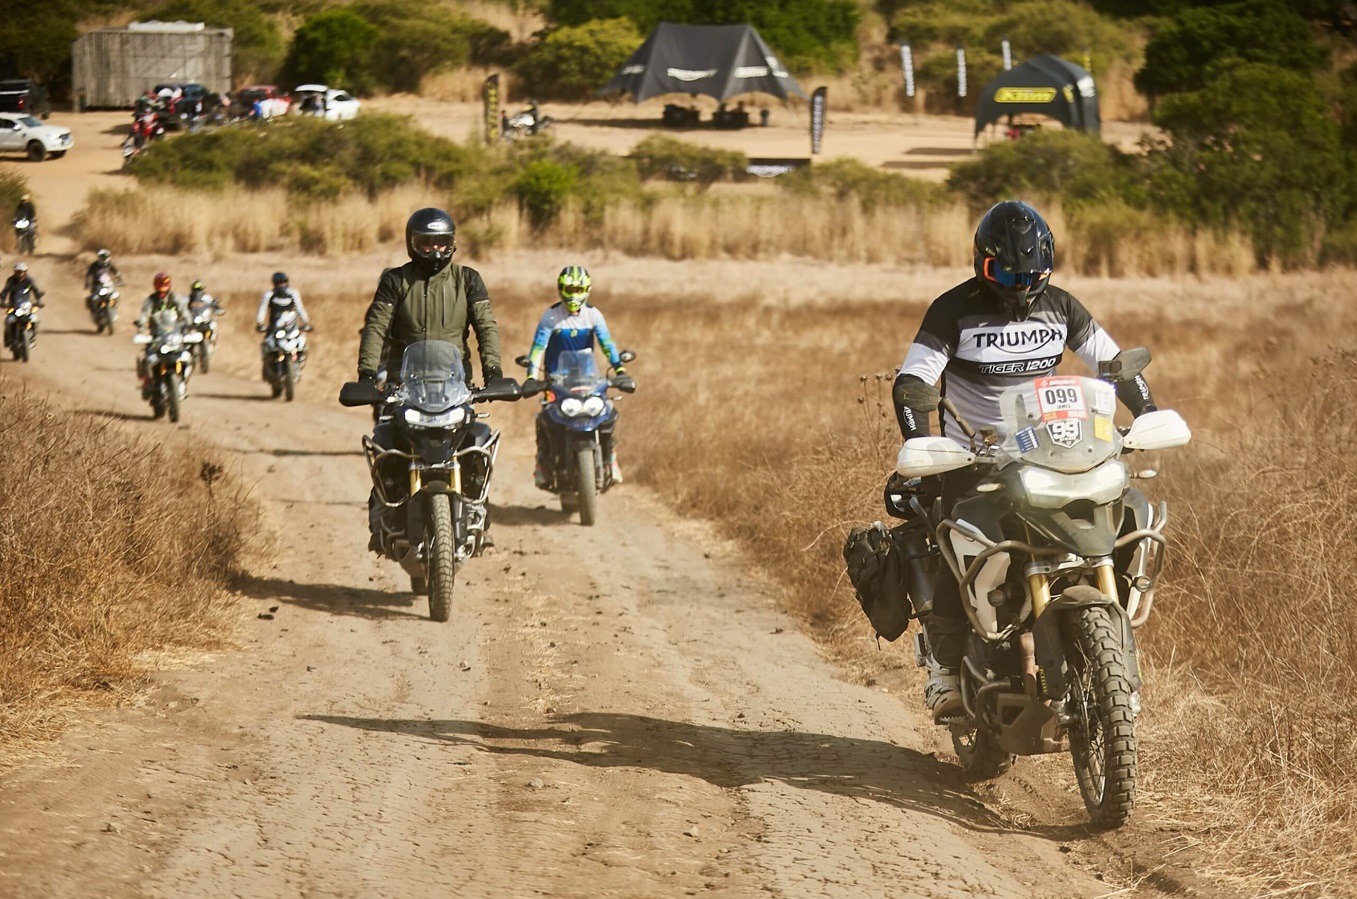 Triumph Motorcycles y Parque Las Palmas inauguran primera pista en Chile exclusiva para motos bigtrail